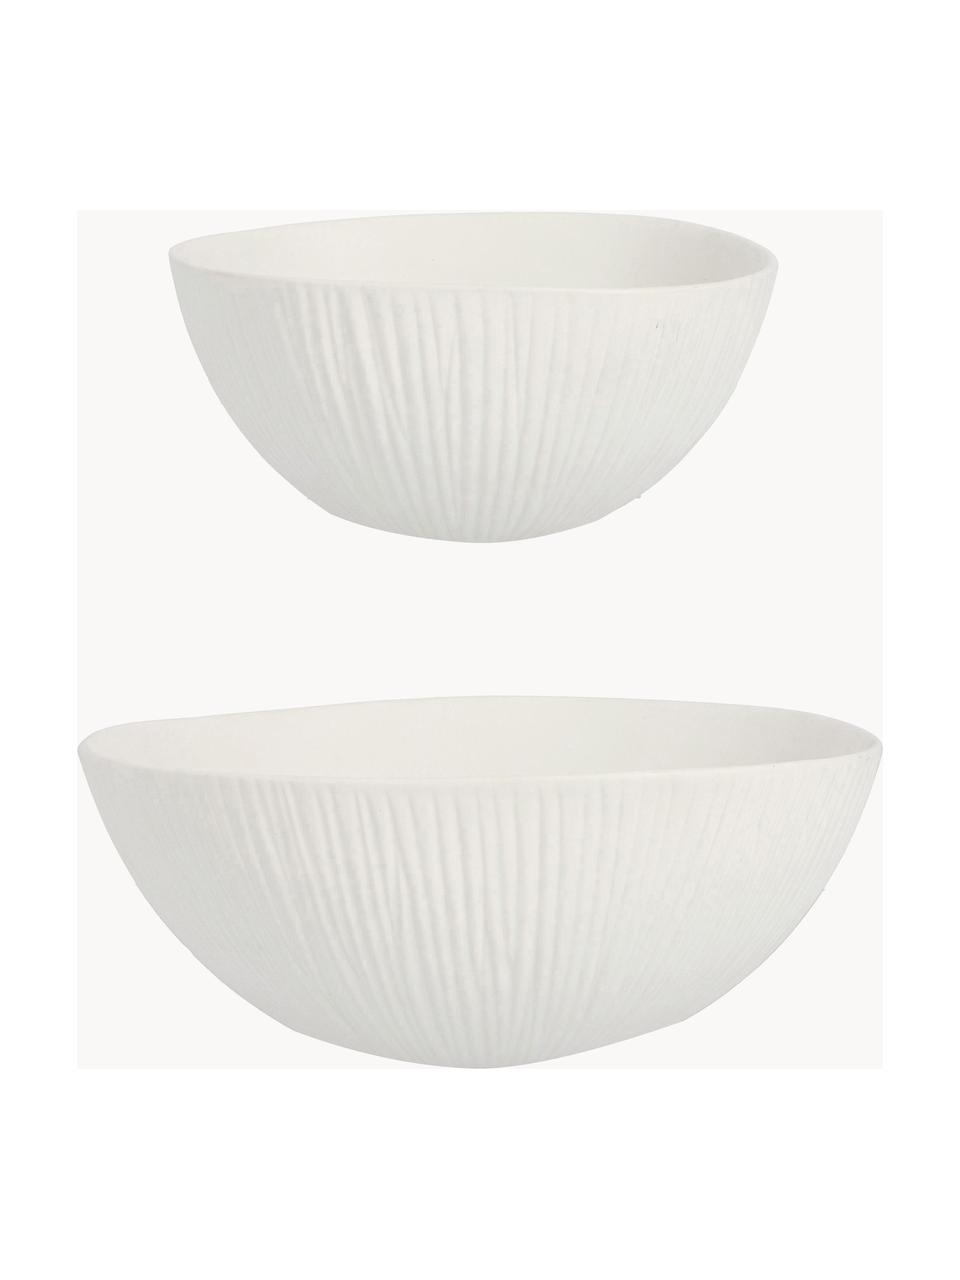 Keramik-Deko-Schalen Striped, 2er-Set, Keramik, Weiß, Set mit verschiedenen Größen